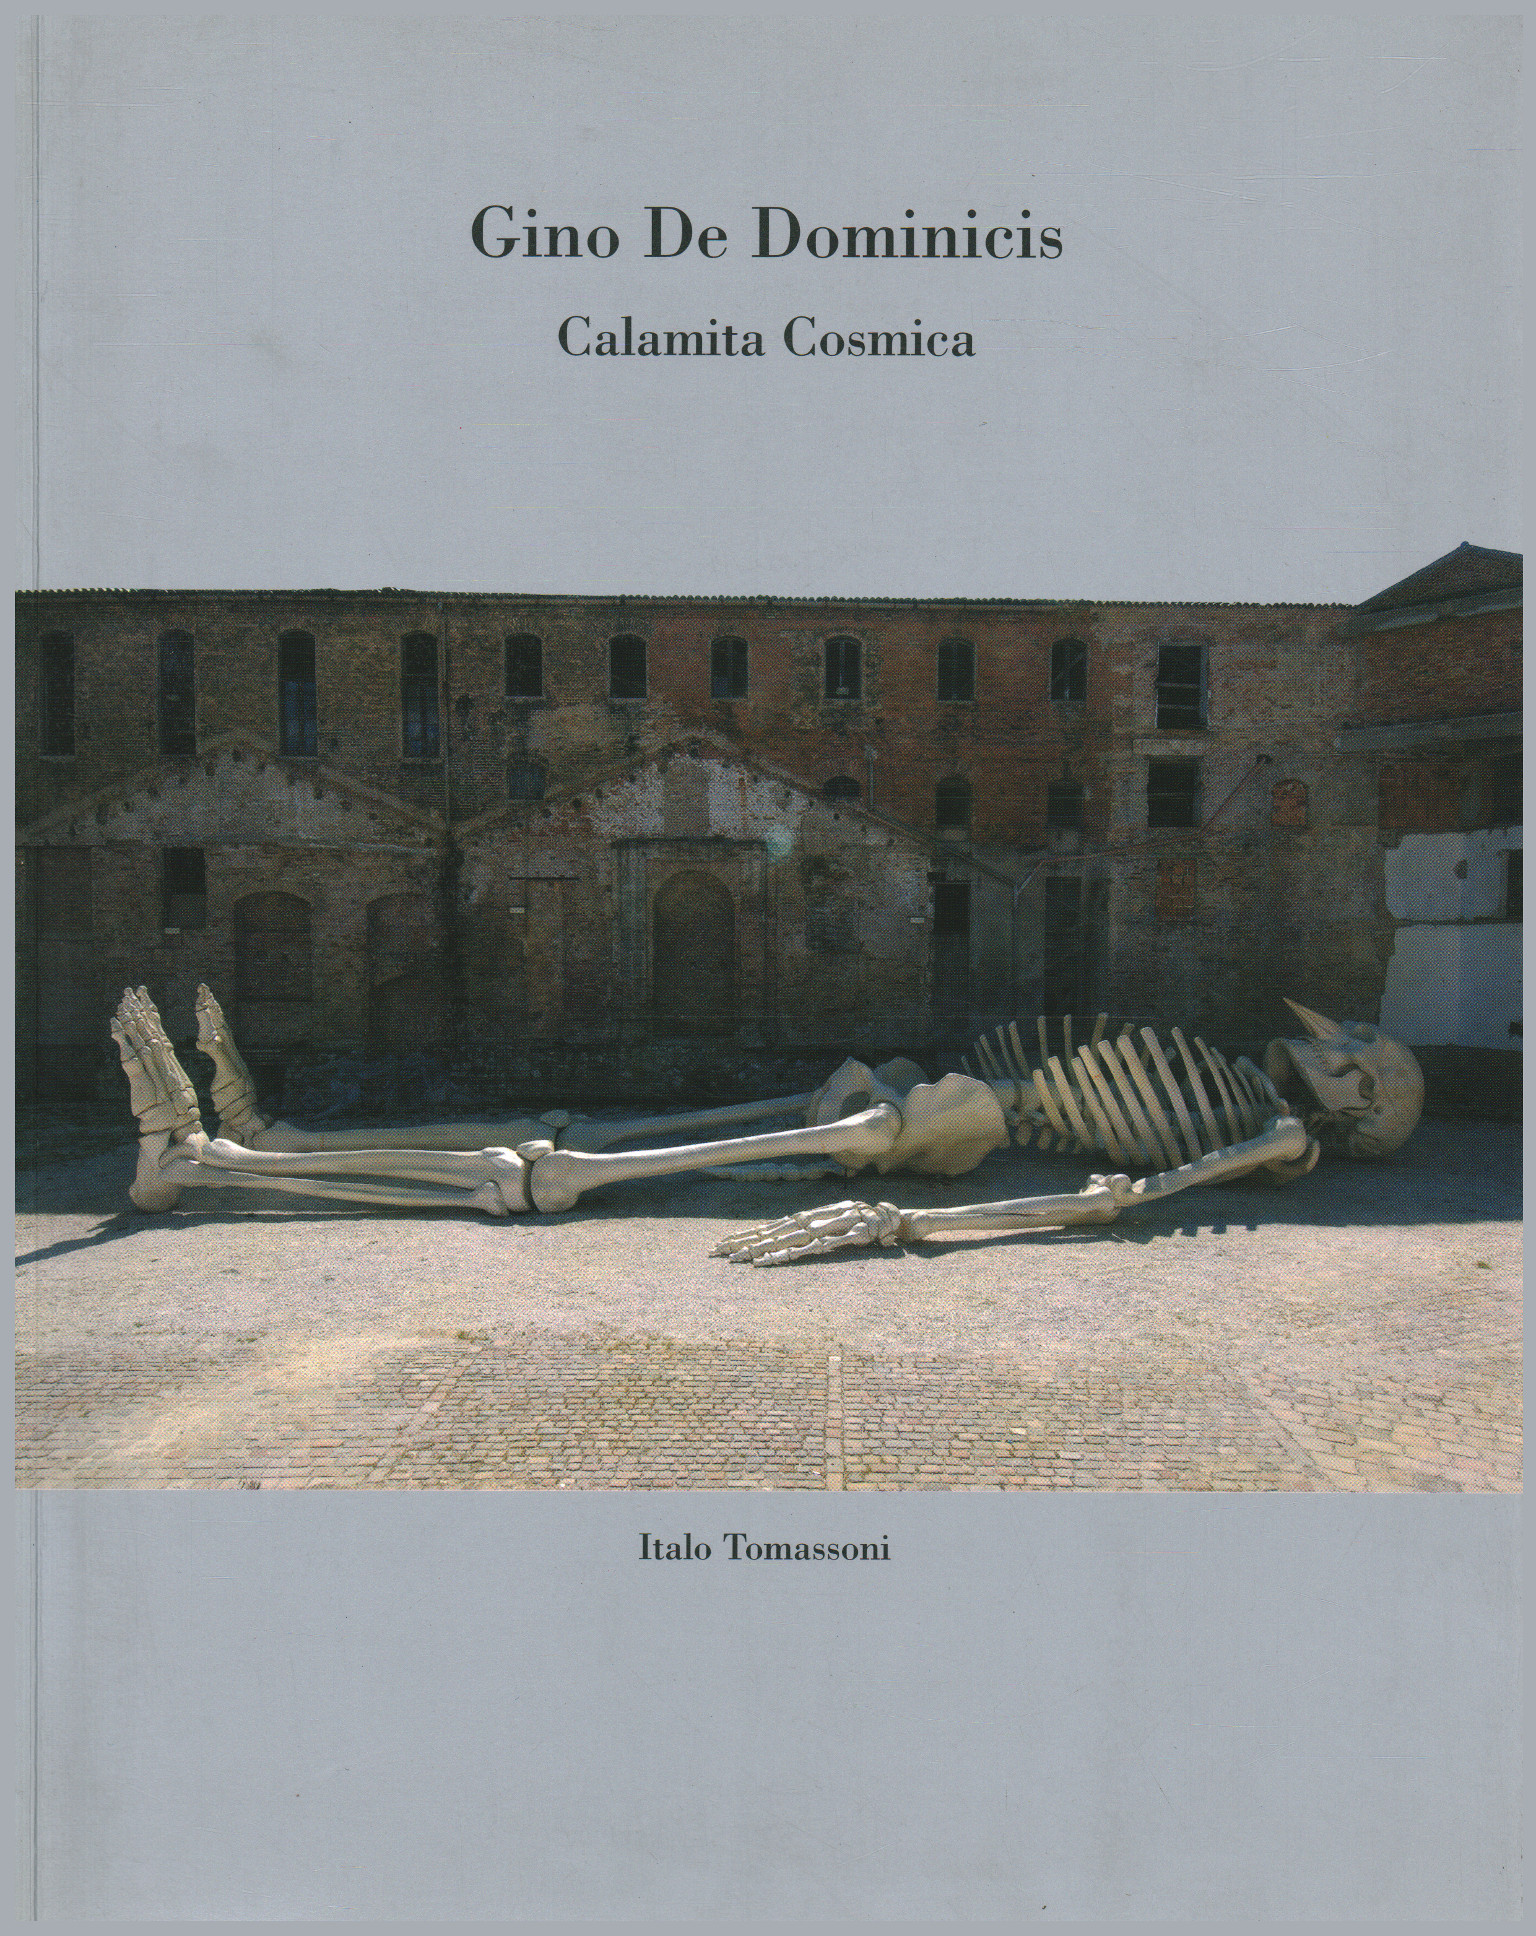 Gino de Dominics, Italo Tommasoni